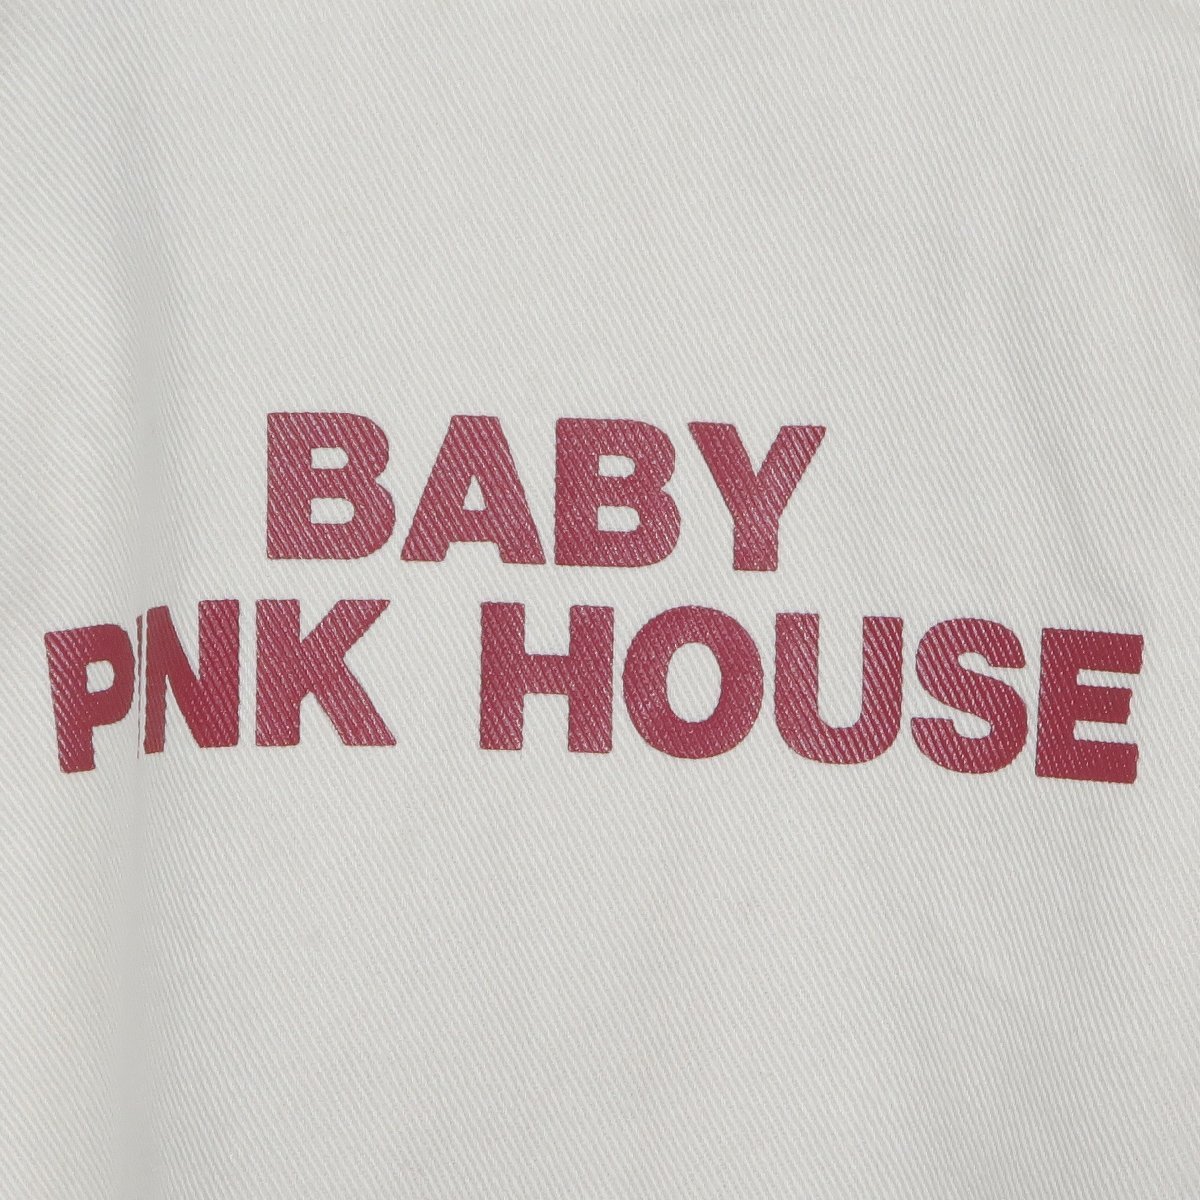  бледно-розовый house * Zip выше блузон размер M(110) серебристый жевательная резинка проверка спина Logo Vintage! off белой серии z4926